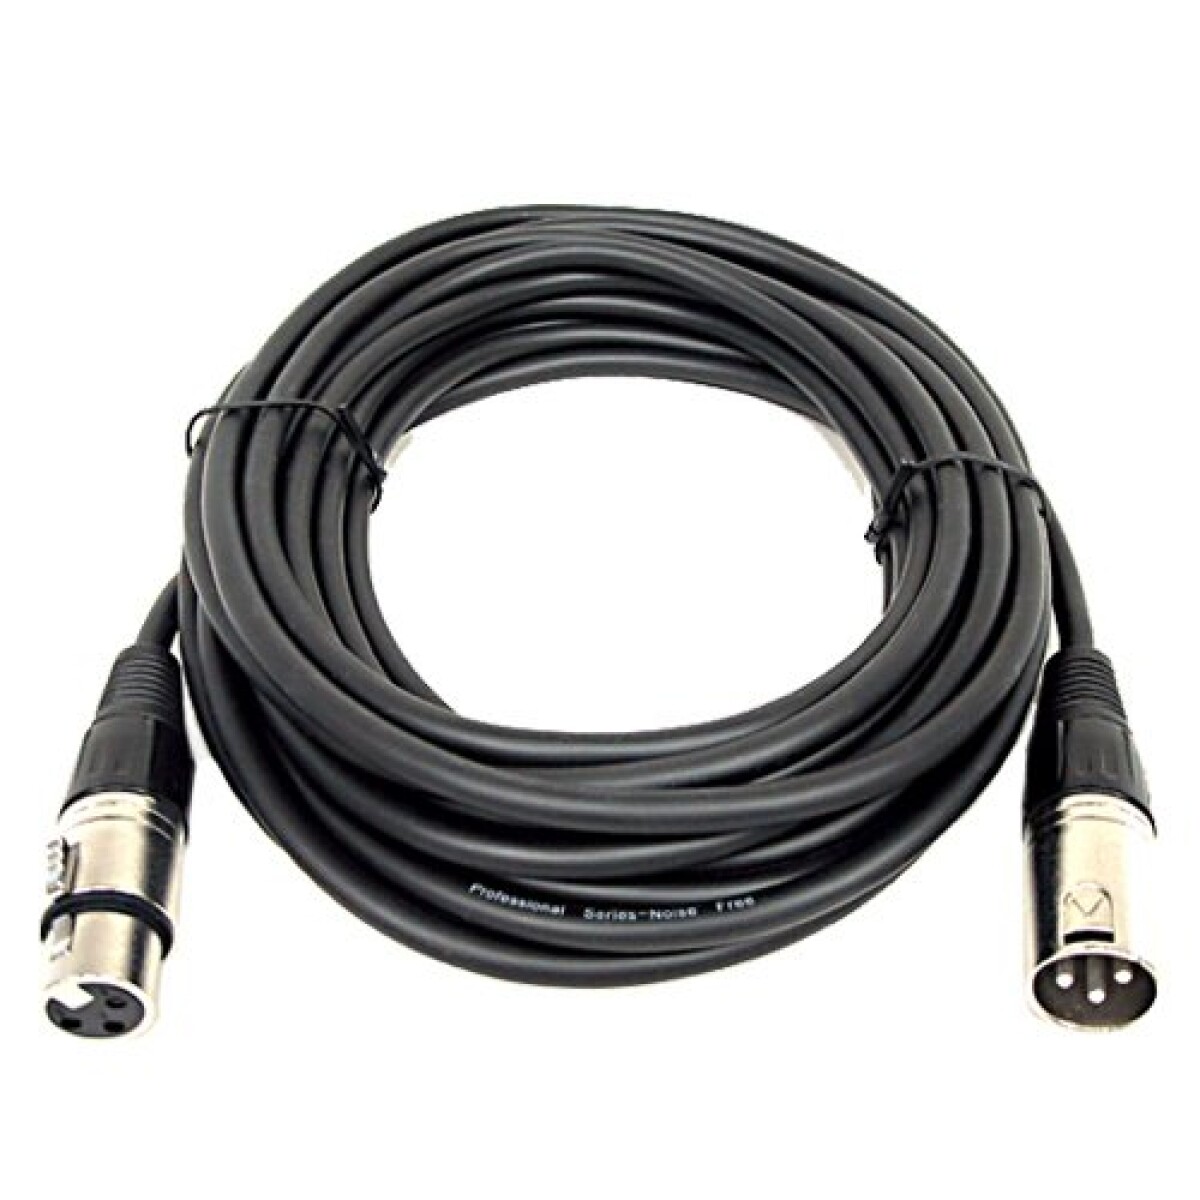 Cable Microfono Lexsen Mc41 Xlr-xlr 15mts 